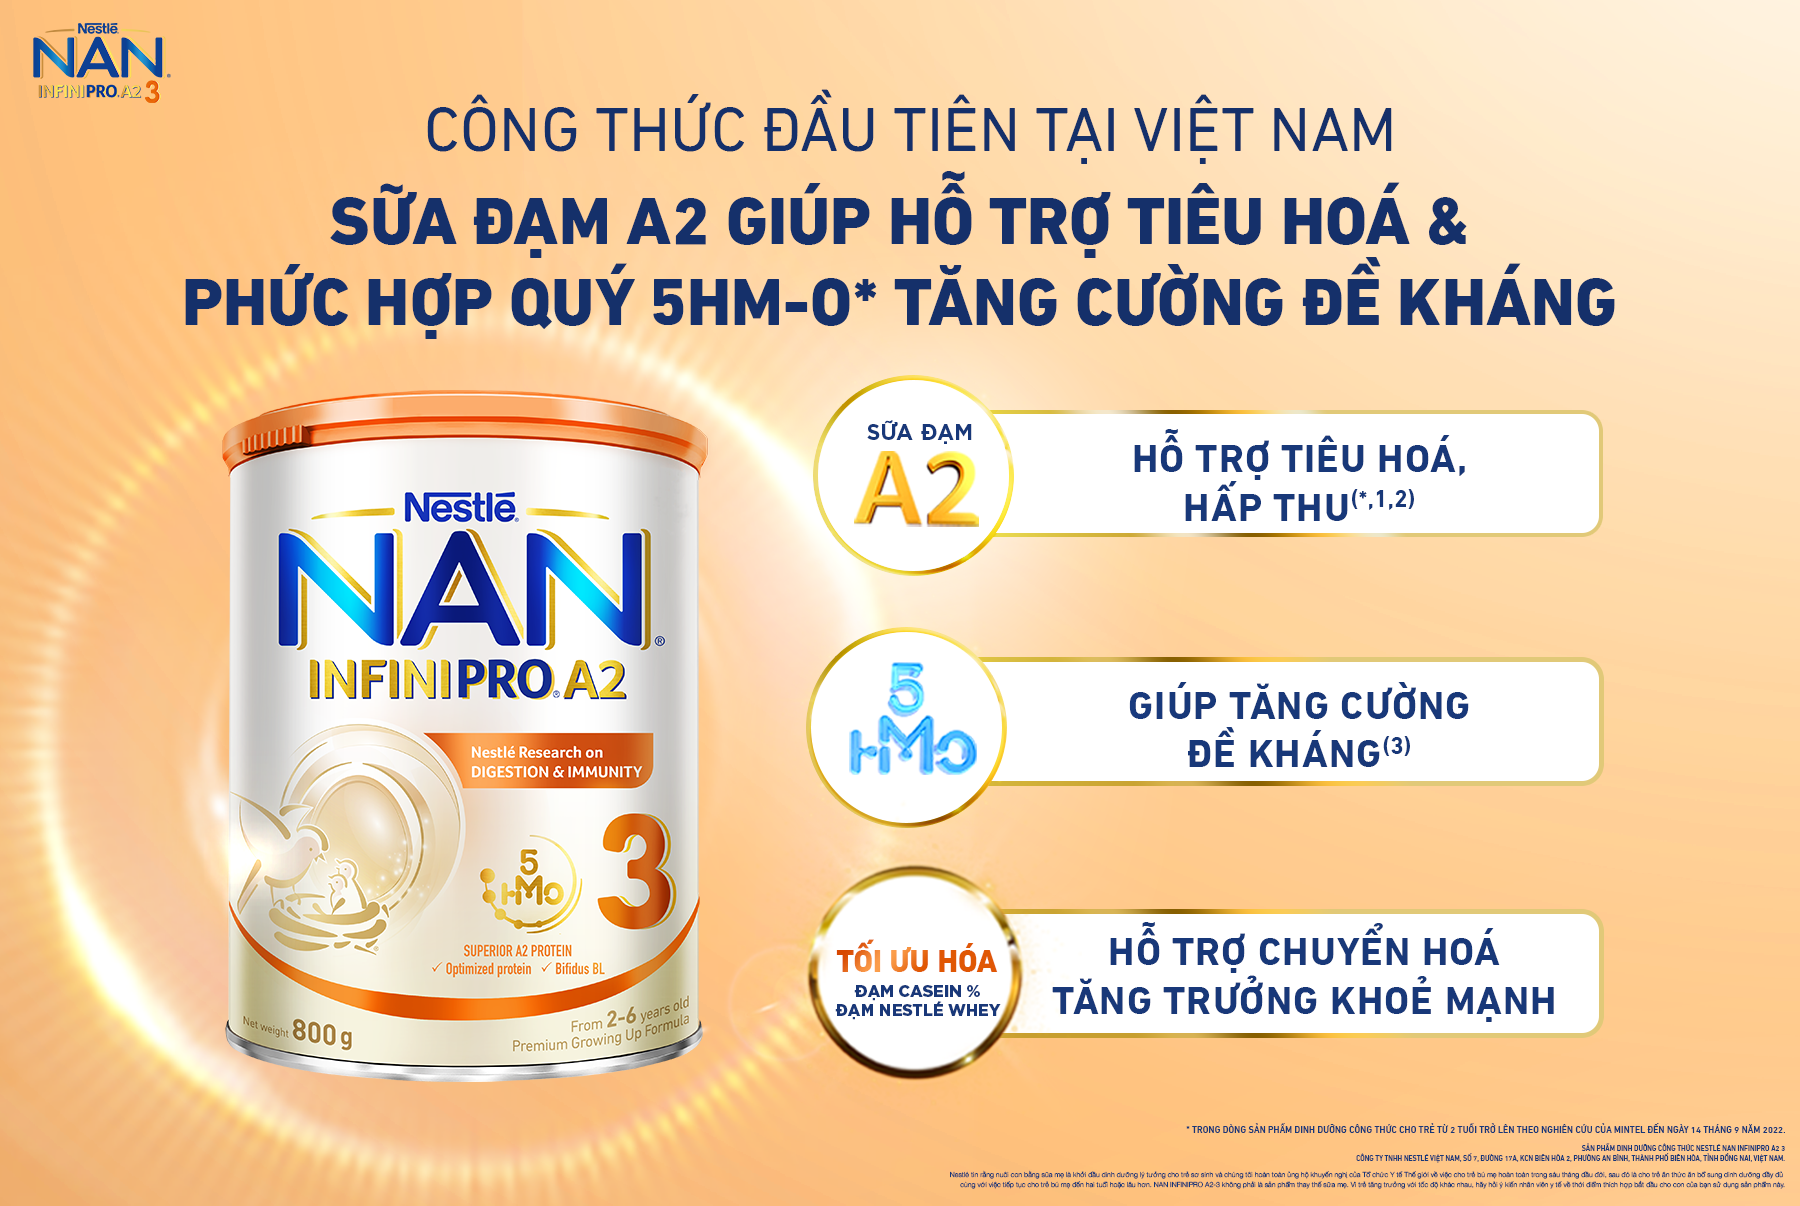 Sữa Nan InfiniPro A2 - Siêu phẩm dinh dưỡng với công thức vượt trội: